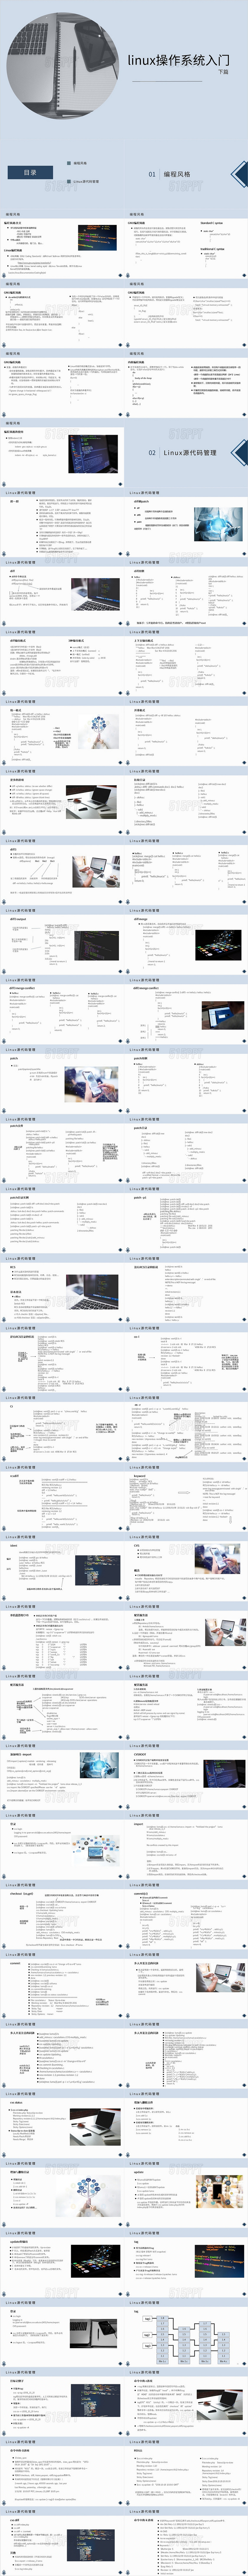 蓝色商务总结分析linux操作系统入门市场分析PPT模板linux操作系统入门 (2)